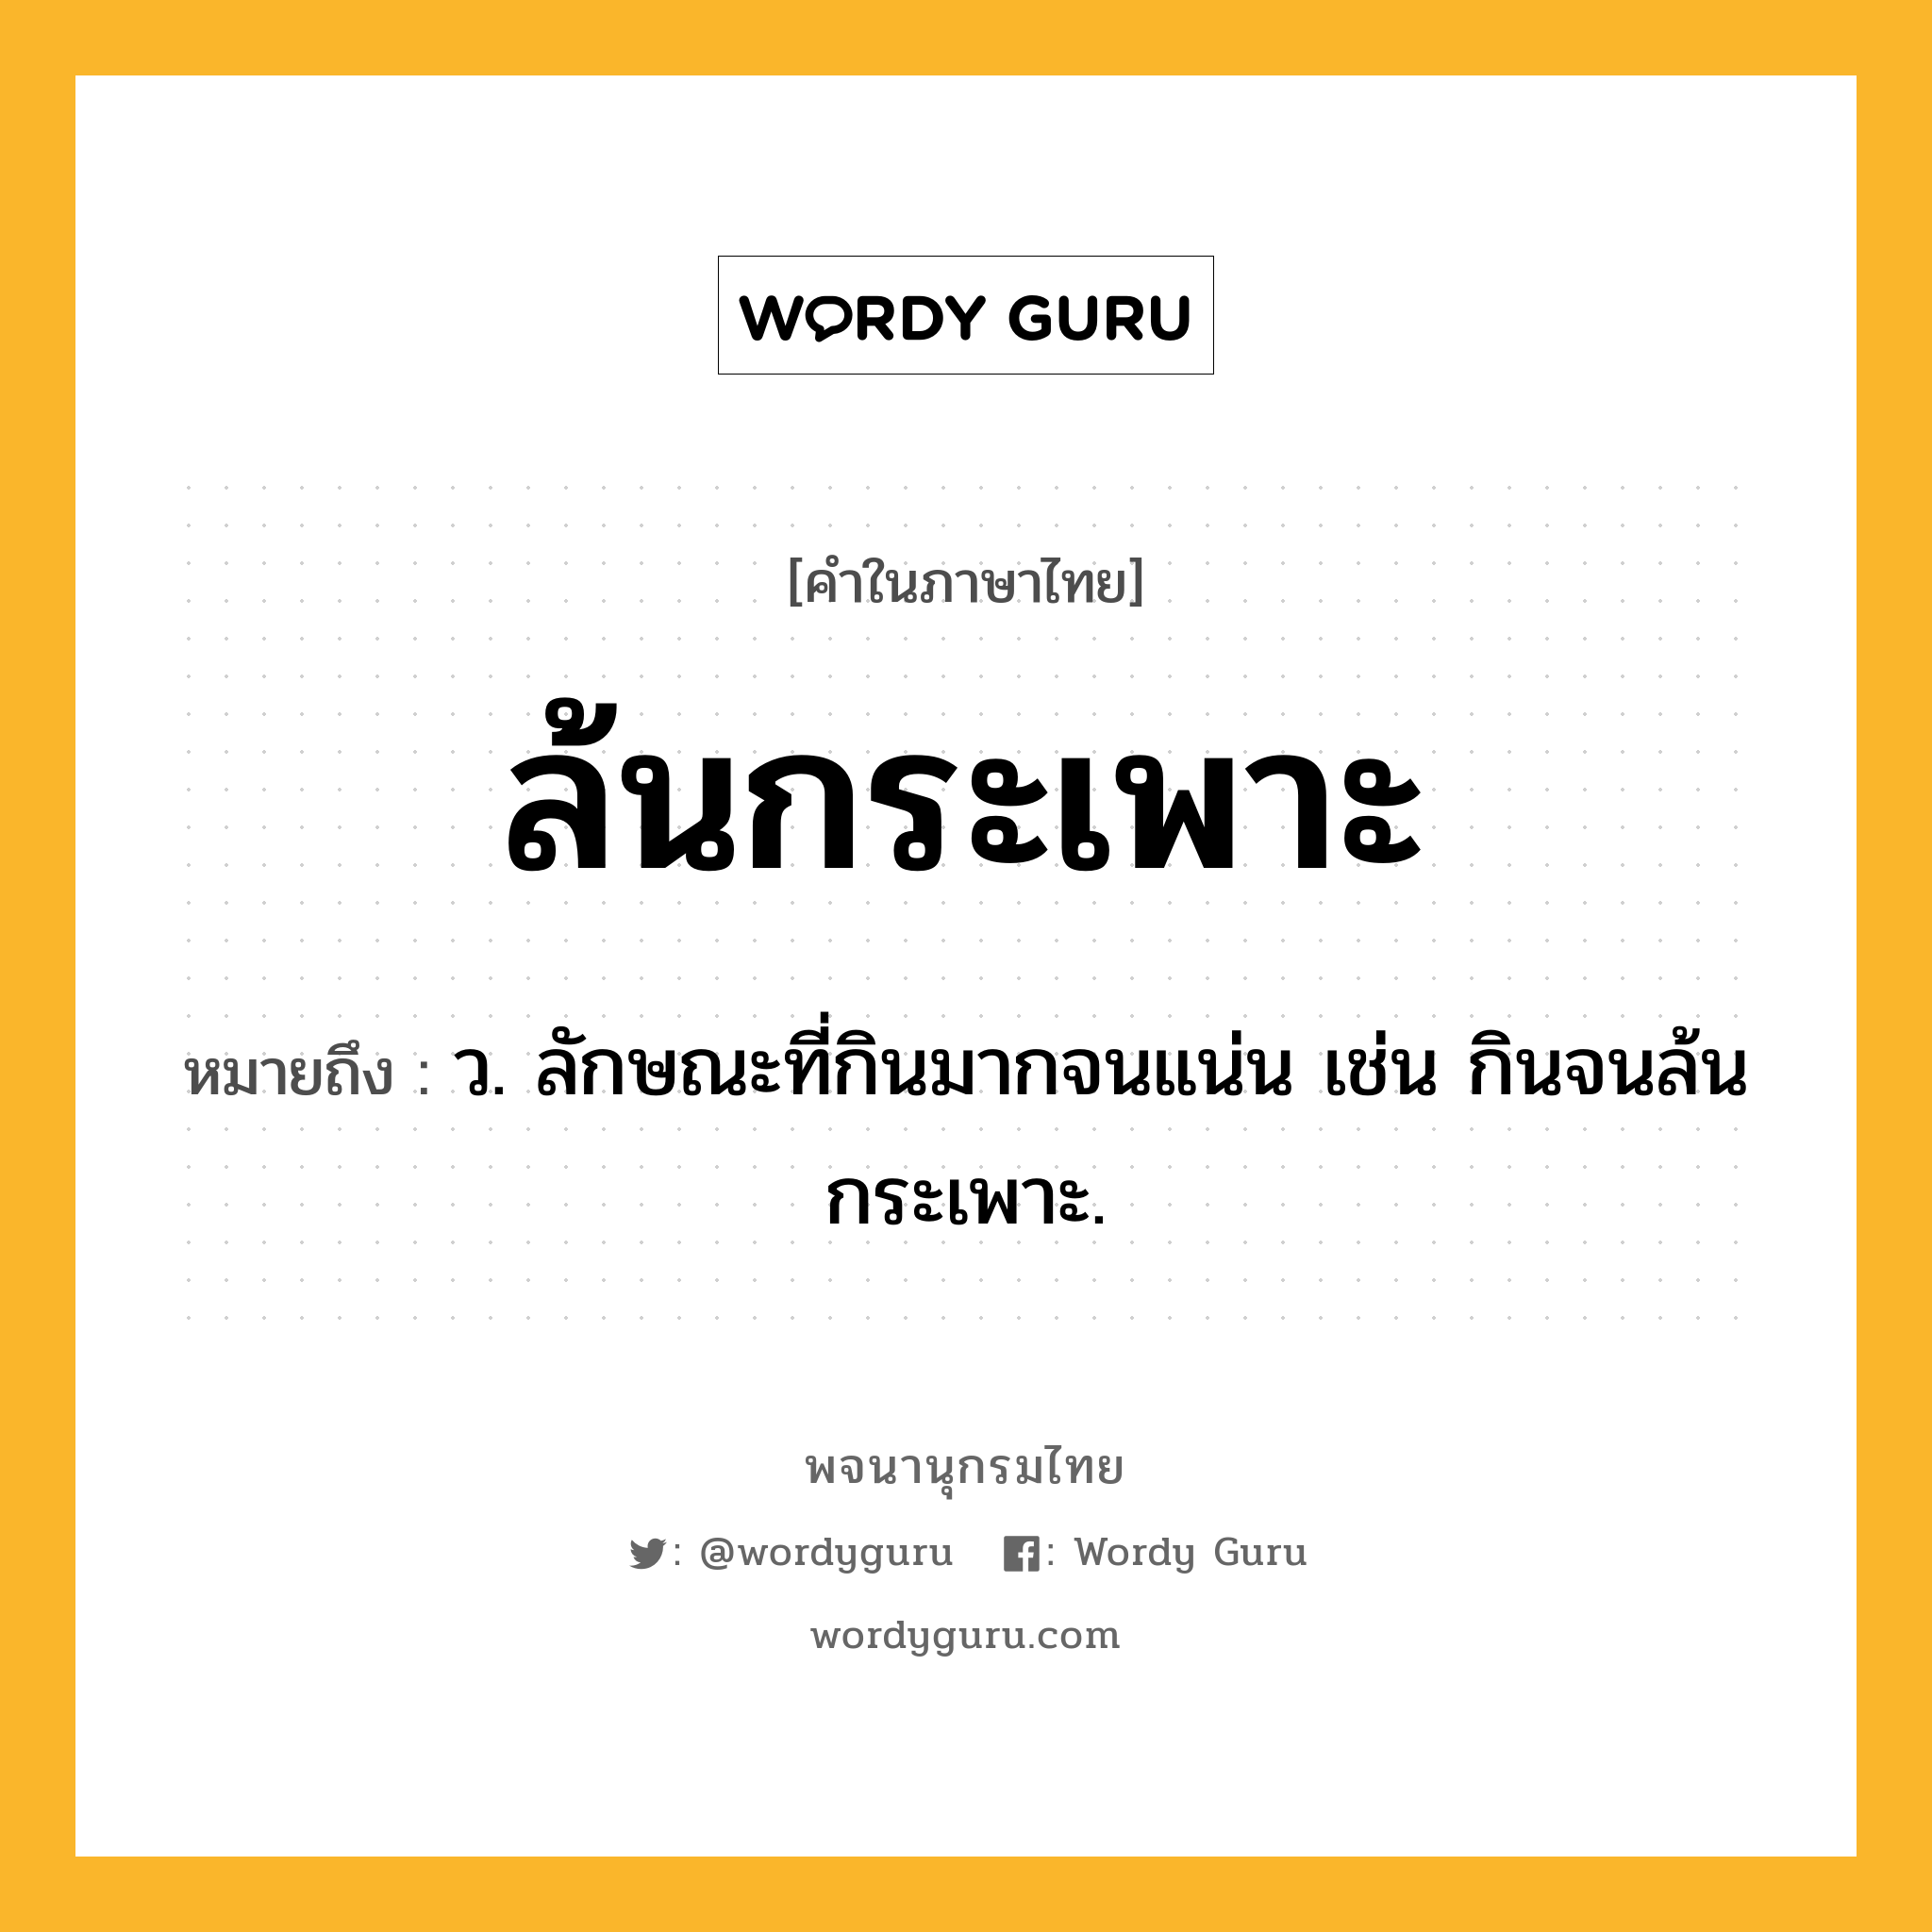 ล้นกระเพาะ หมายถึงอะไร?, คำในภาษาไทย ล้นกระเพาะ หมายถึง ว. ลักษณะที่กินมากจนแน่น เช่น กินจนล้นกระเพาะ.